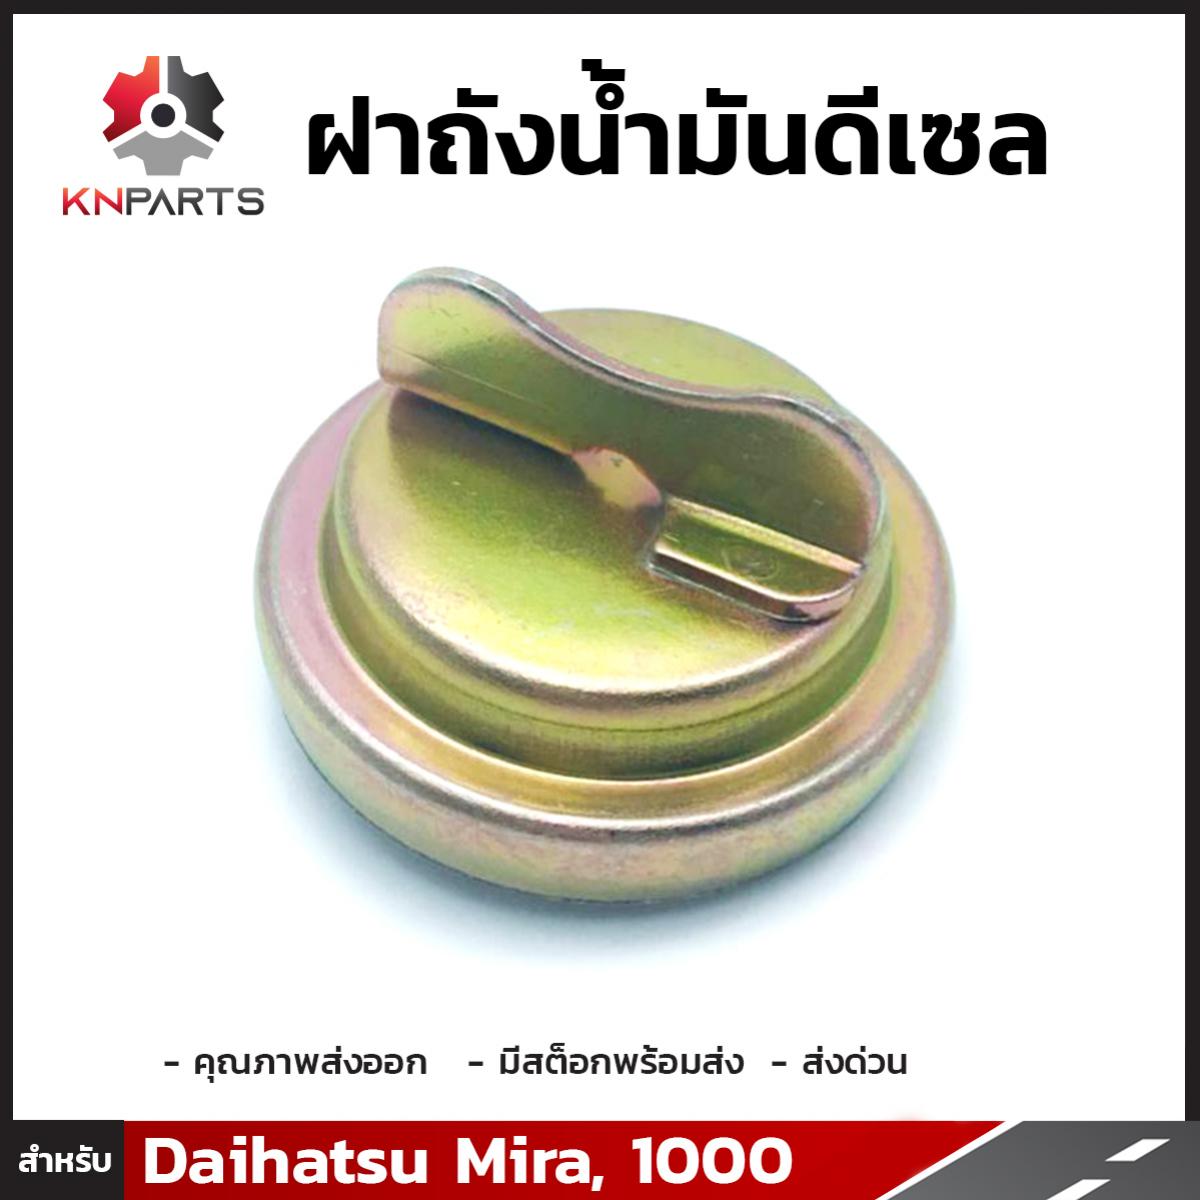 ฝาถังน้ำมันดีเซล 1 ชิ้น สำหรับ Daihatsu Mira, 1000